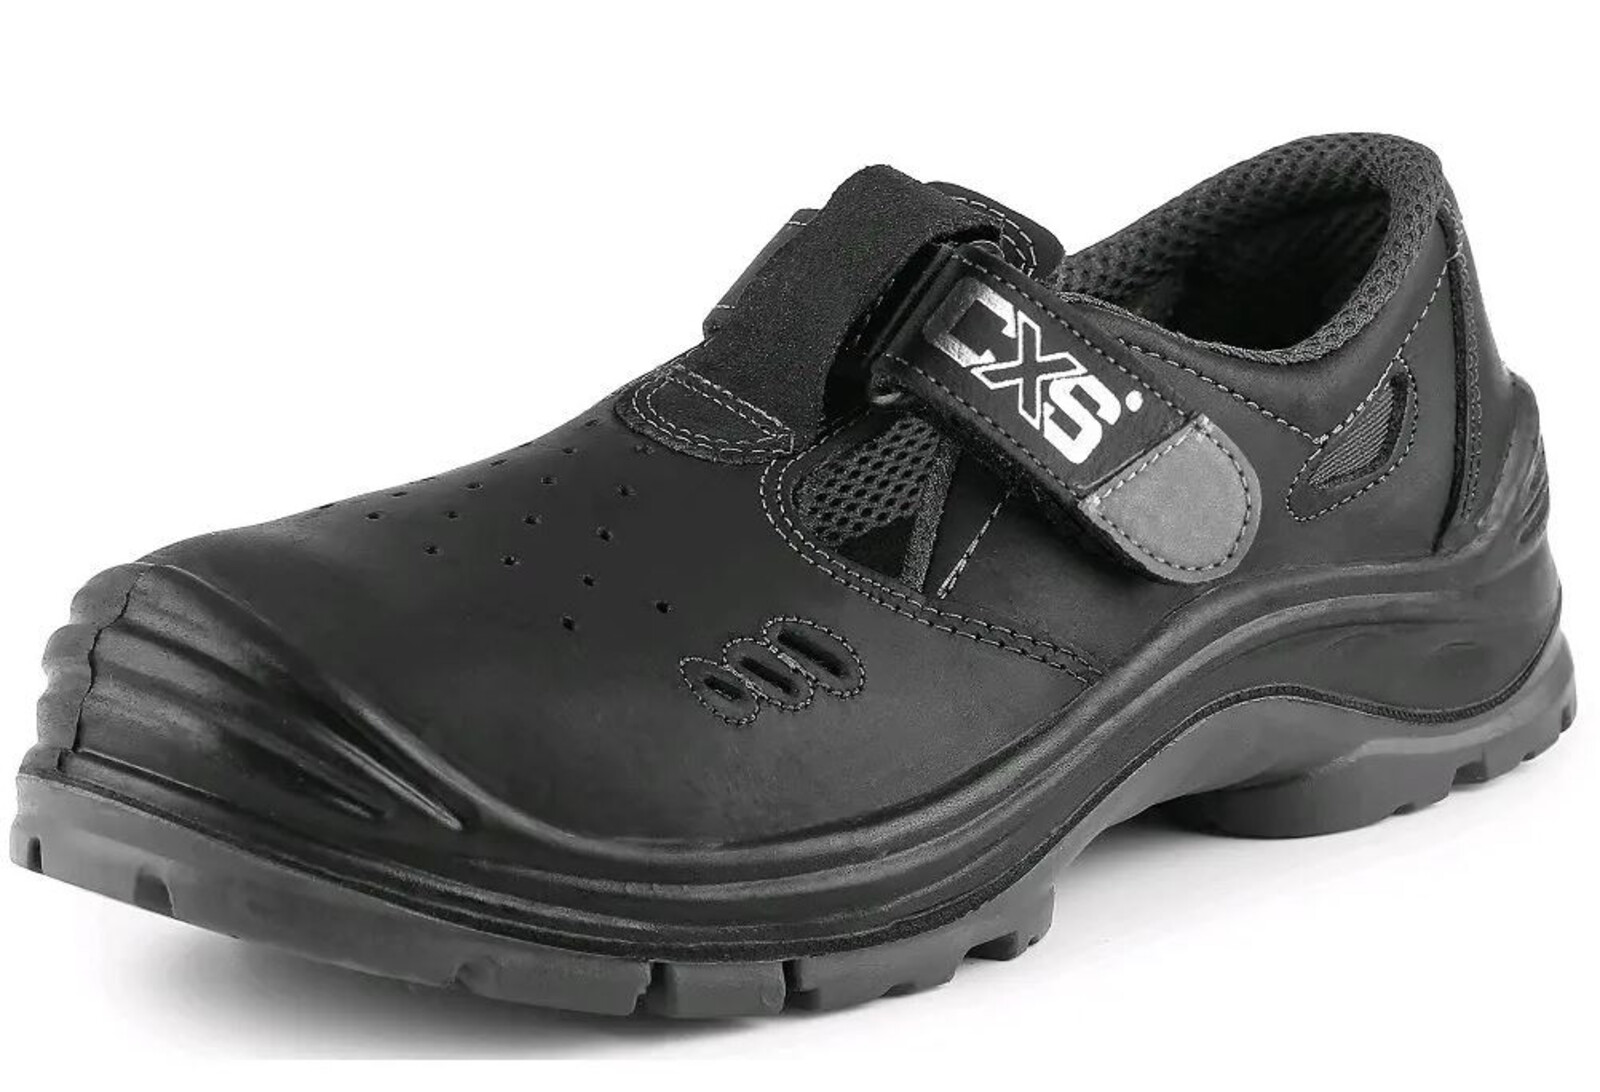 Bezpečnostné sandále CXS Safety Steel Iron S1 - veľkosť: 36, farba: čierna